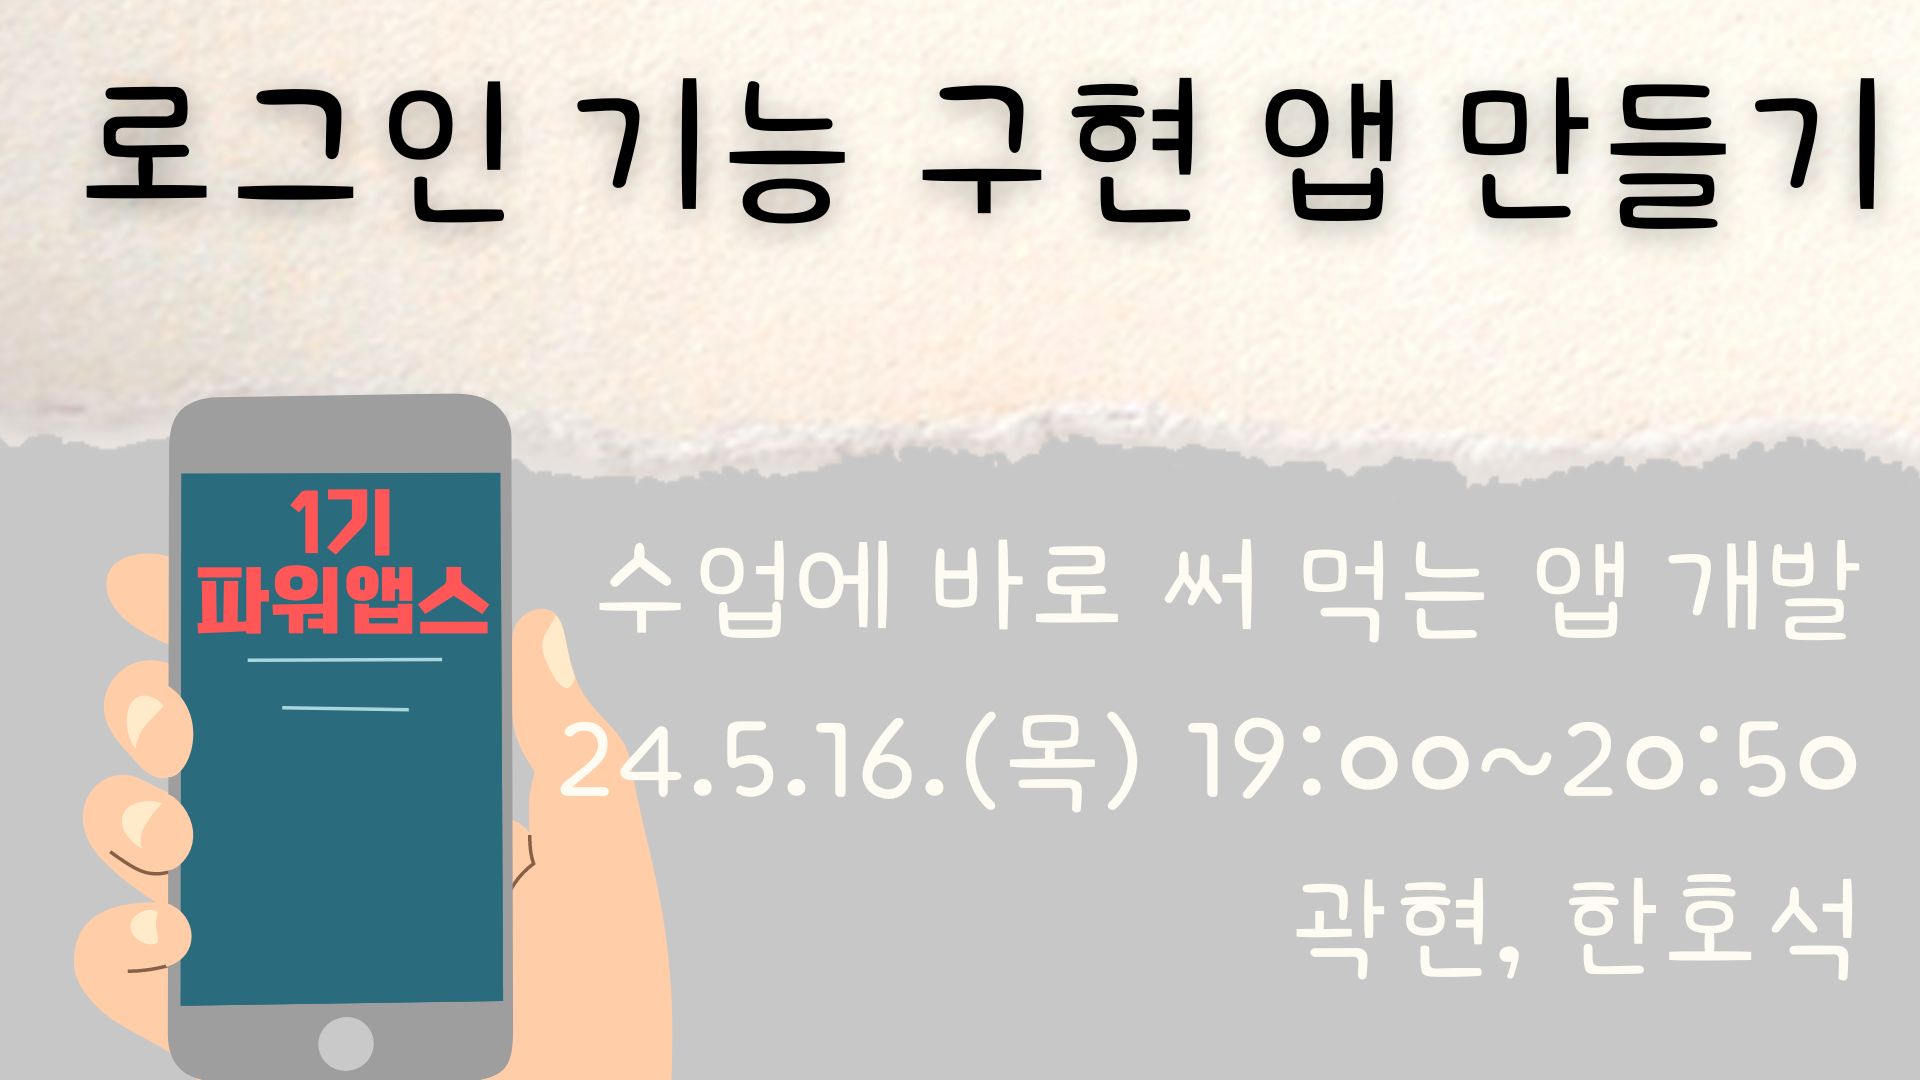 파워앱스) 로그인 기능 구현 앱 만들기 (1기)